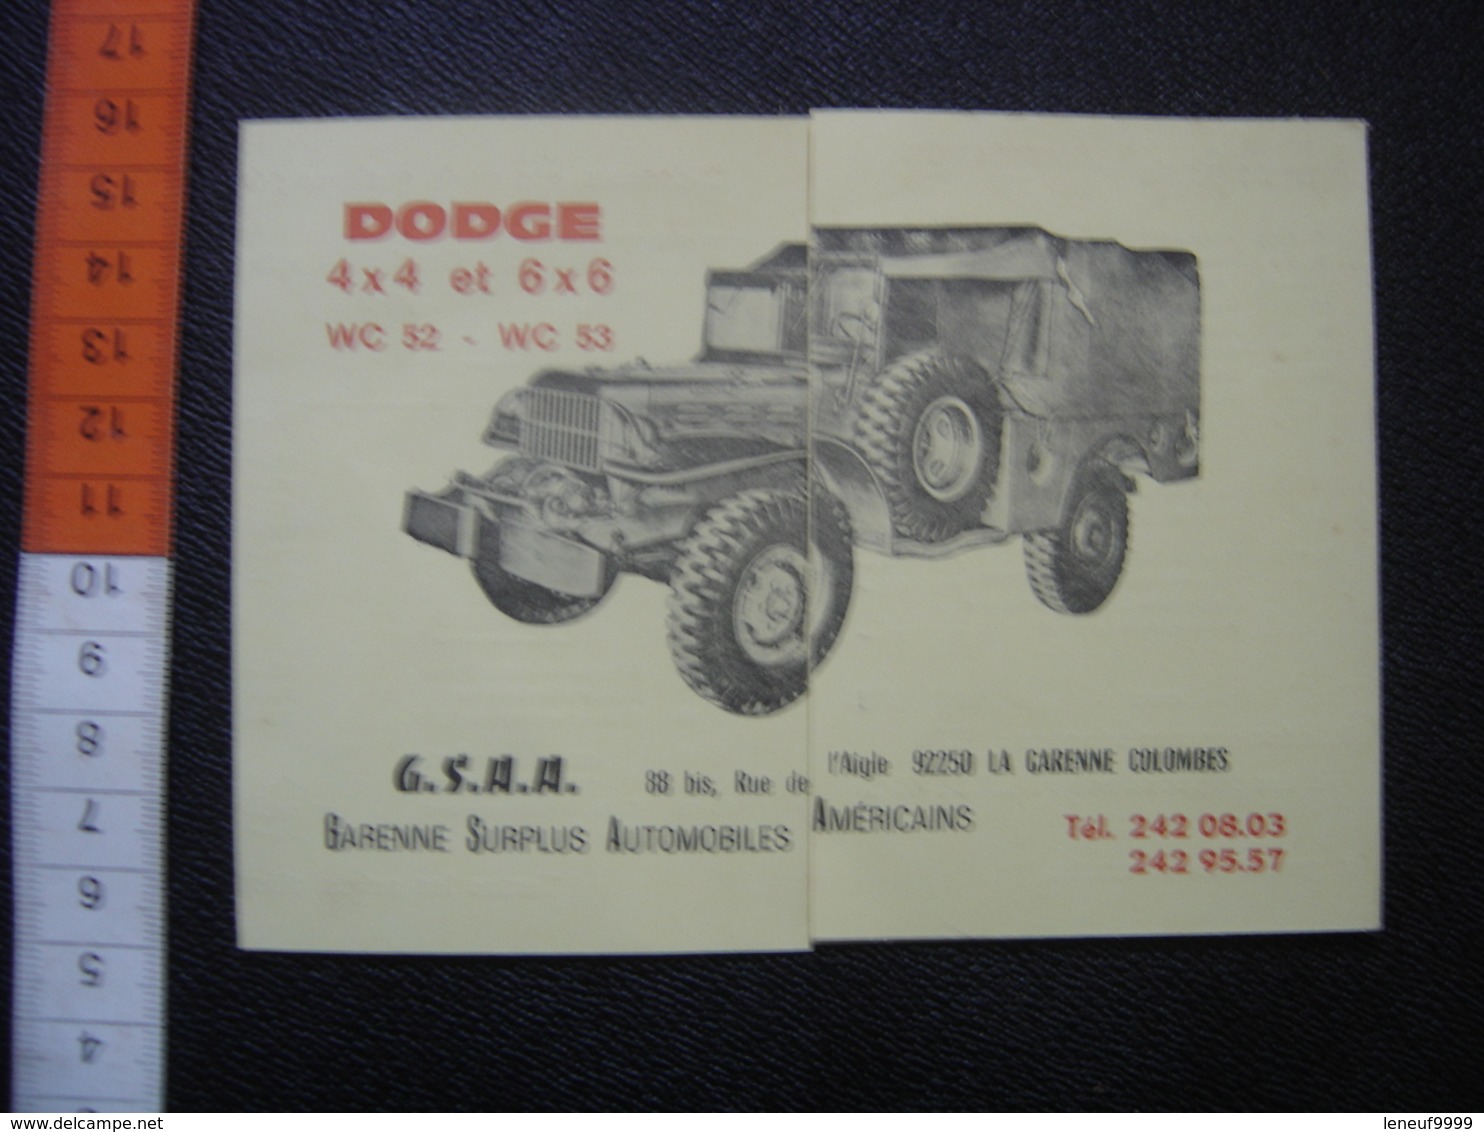 Publicite Tarif Pieces Detachees DODGE 4X4 6X6 Surplus Automobile Americain - Véhicules